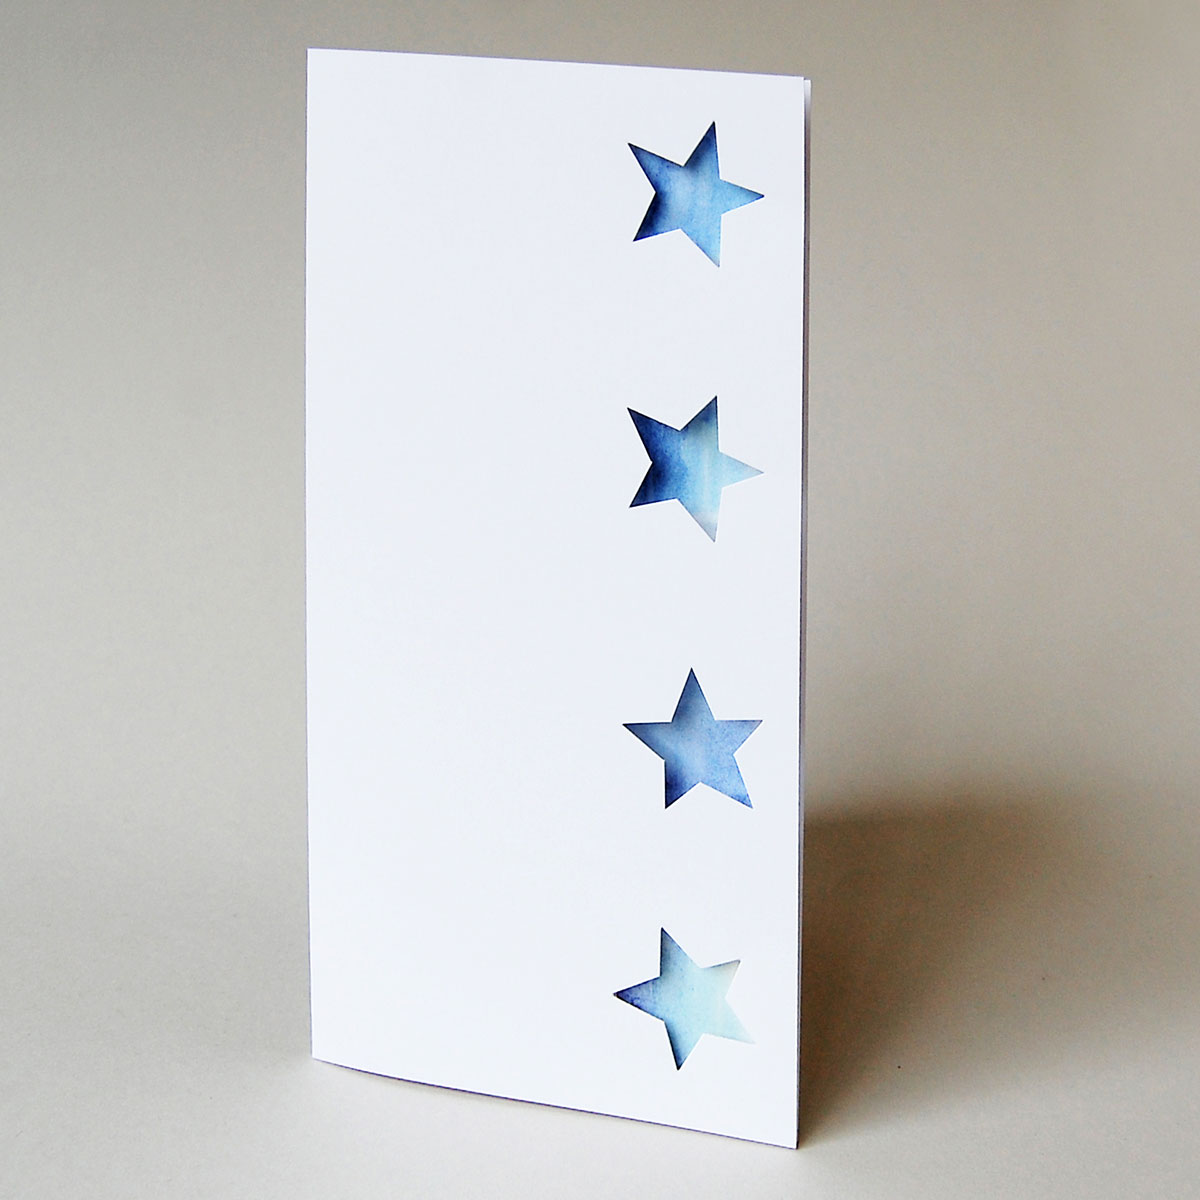 Design-Weihnachtskarte mit gestanzten Sternen